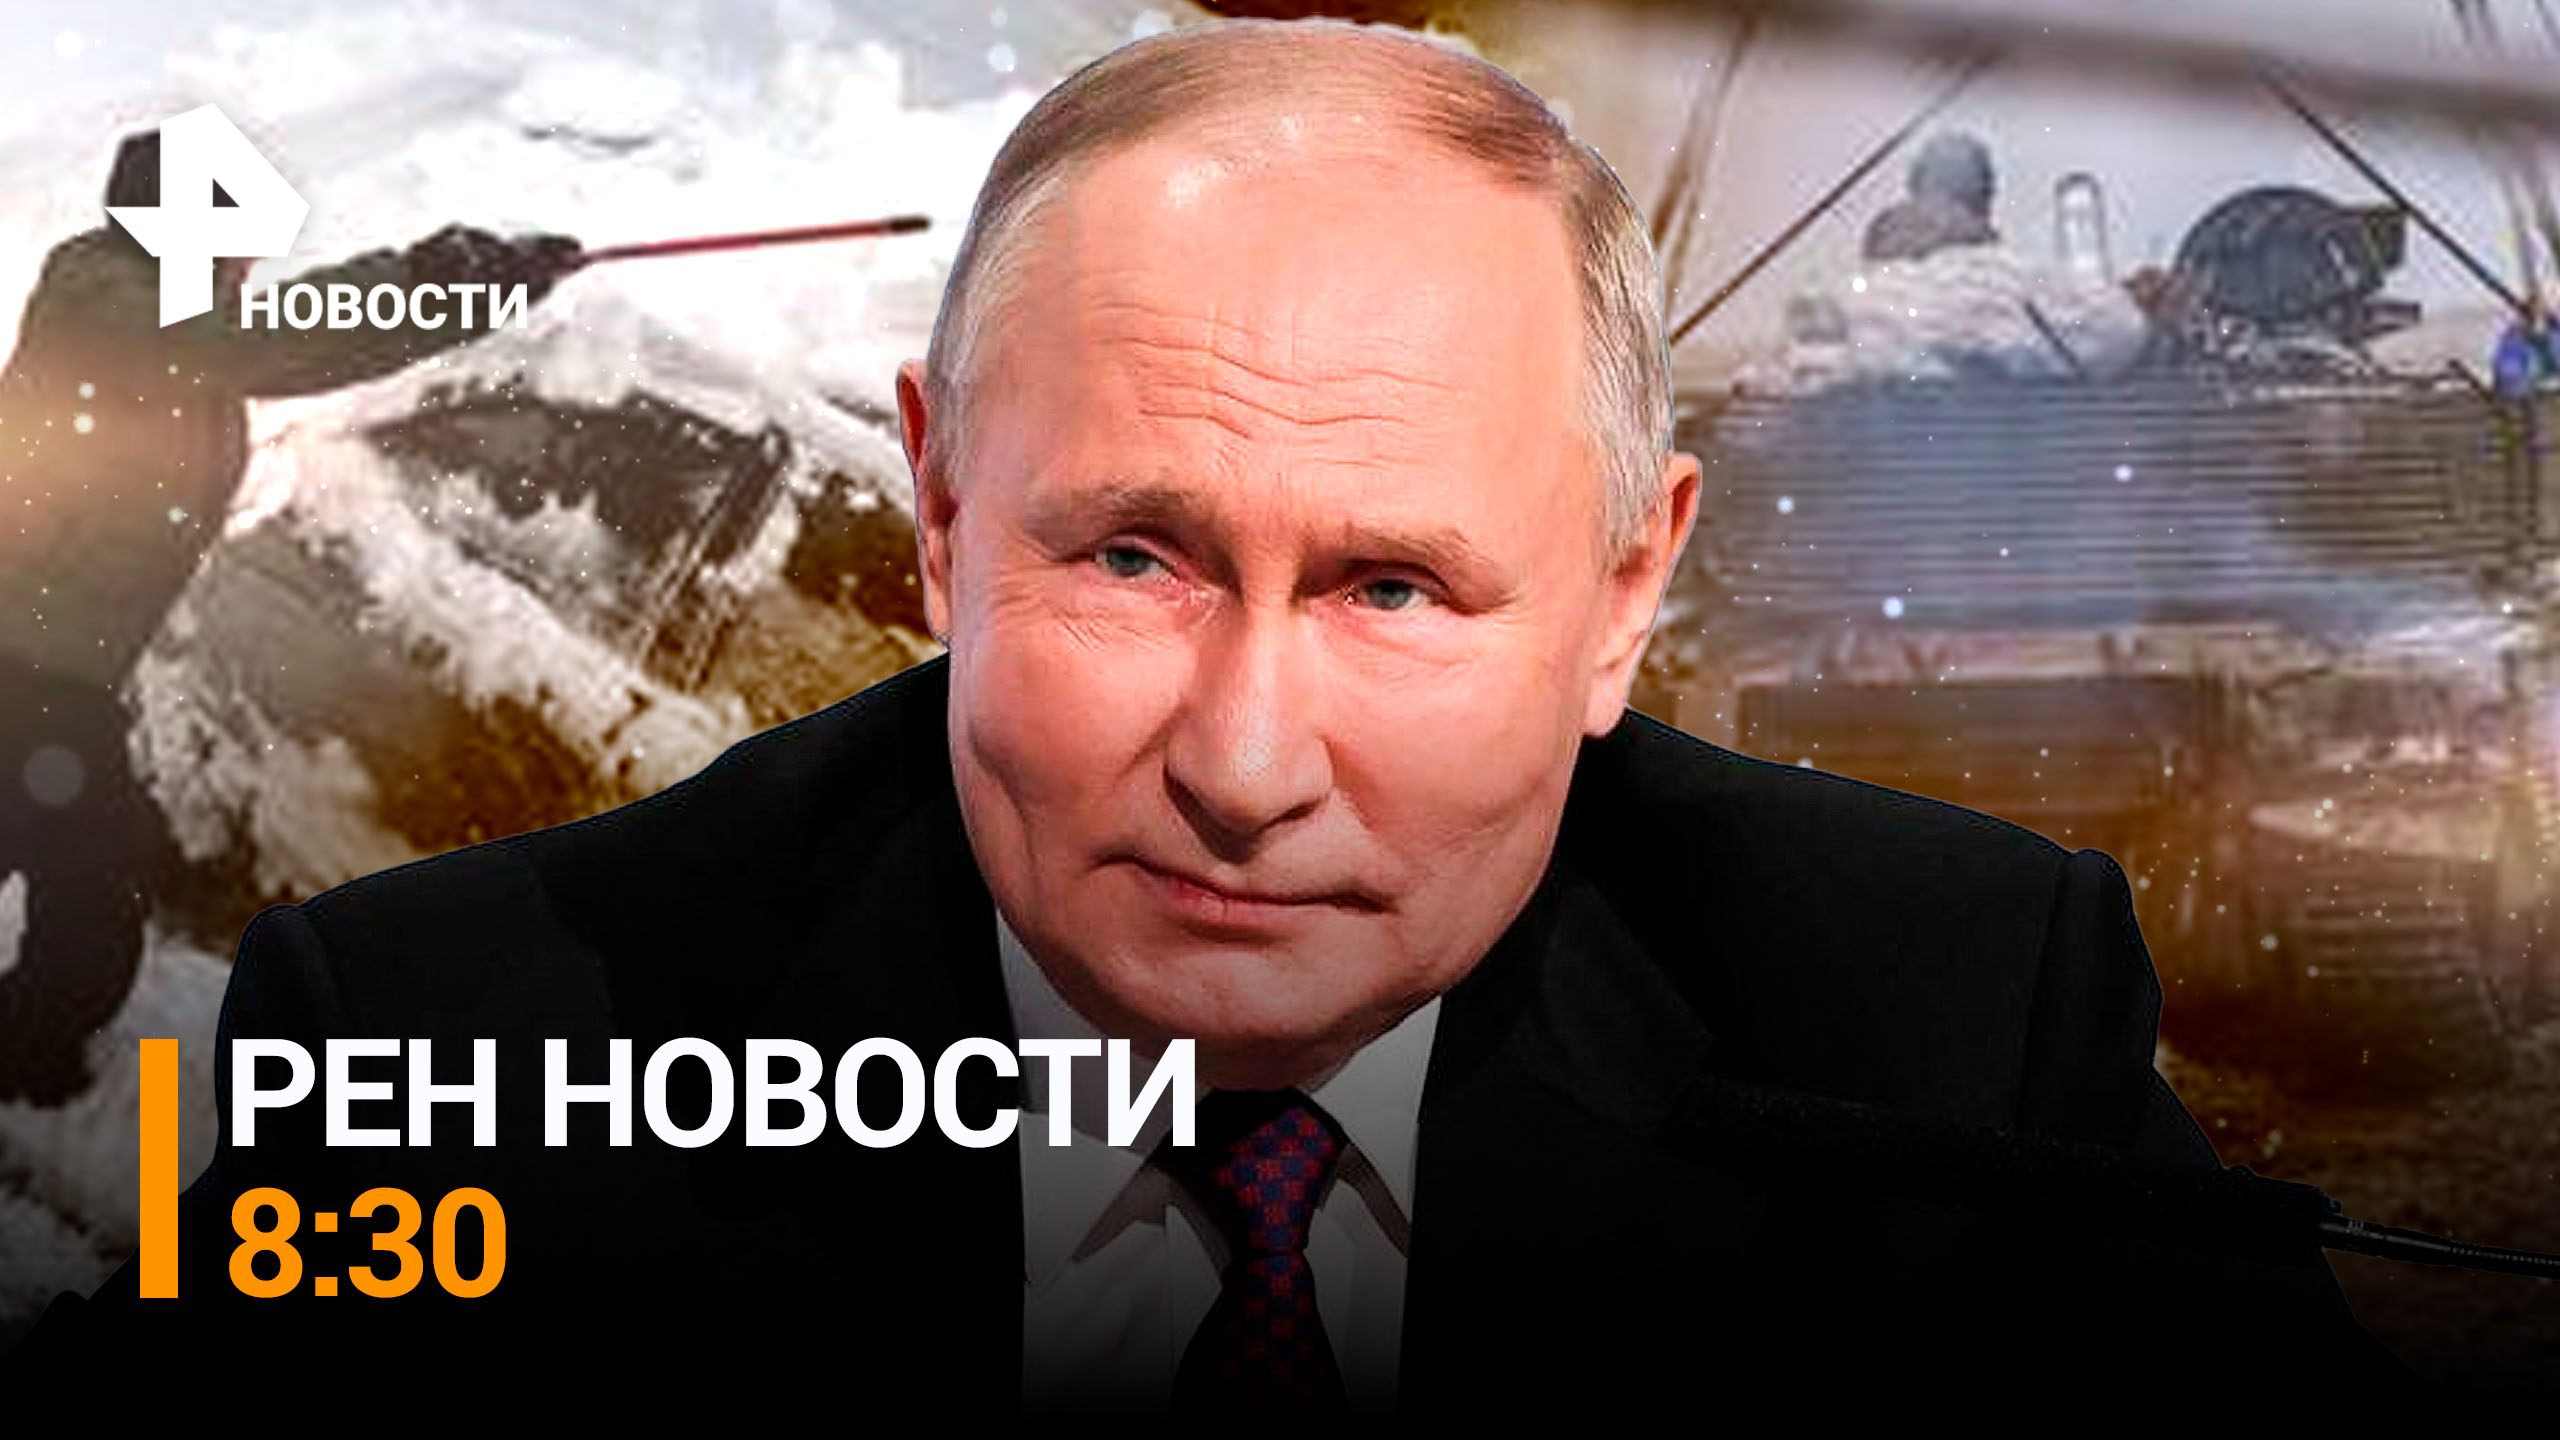 О чем еще говорили на встрече Владимира Путина с главами фракций Госдумы / РЕН Новости 8:30, 16.12.